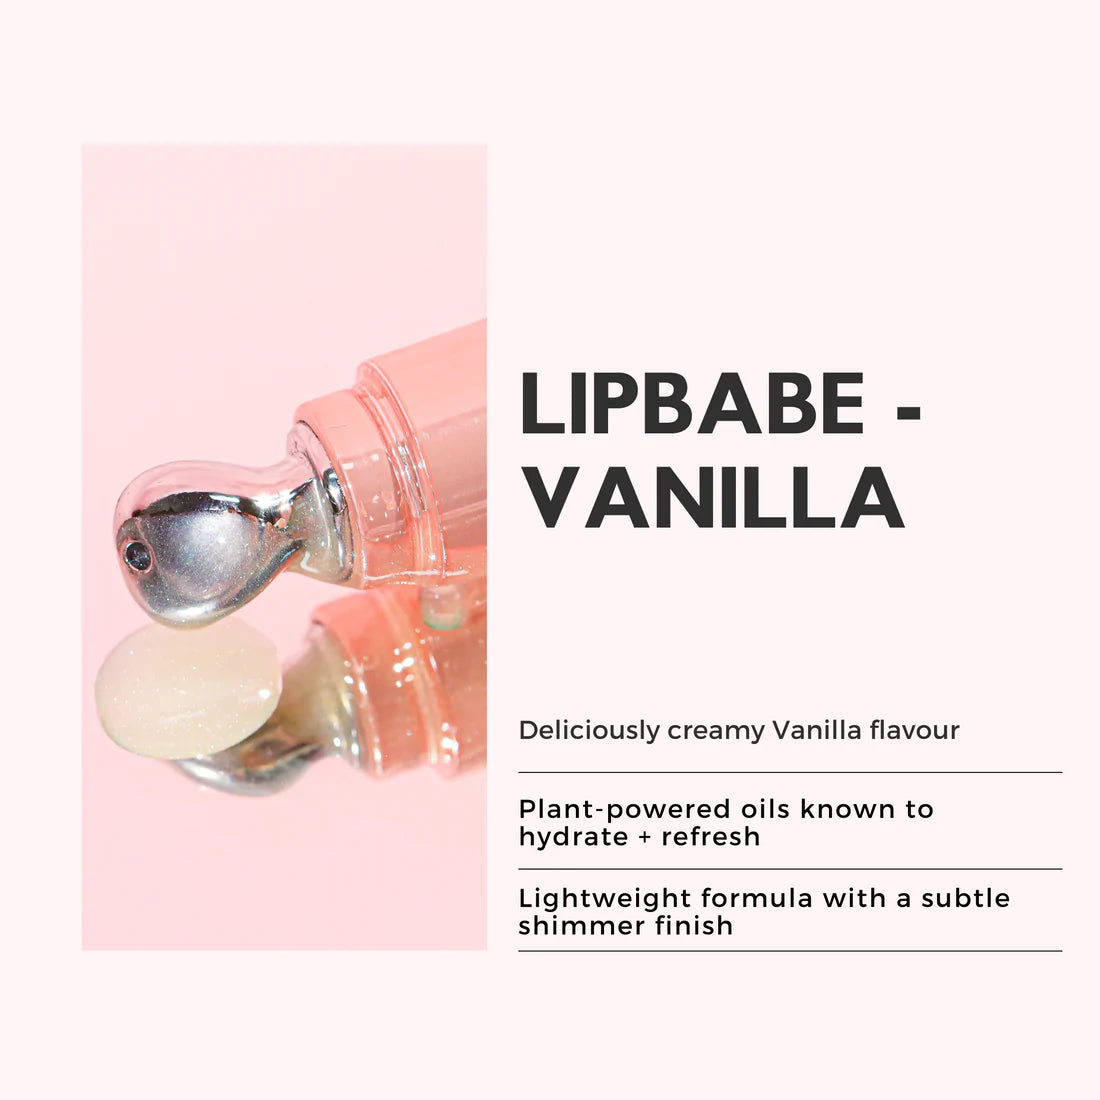 Lip Babe Vanilla